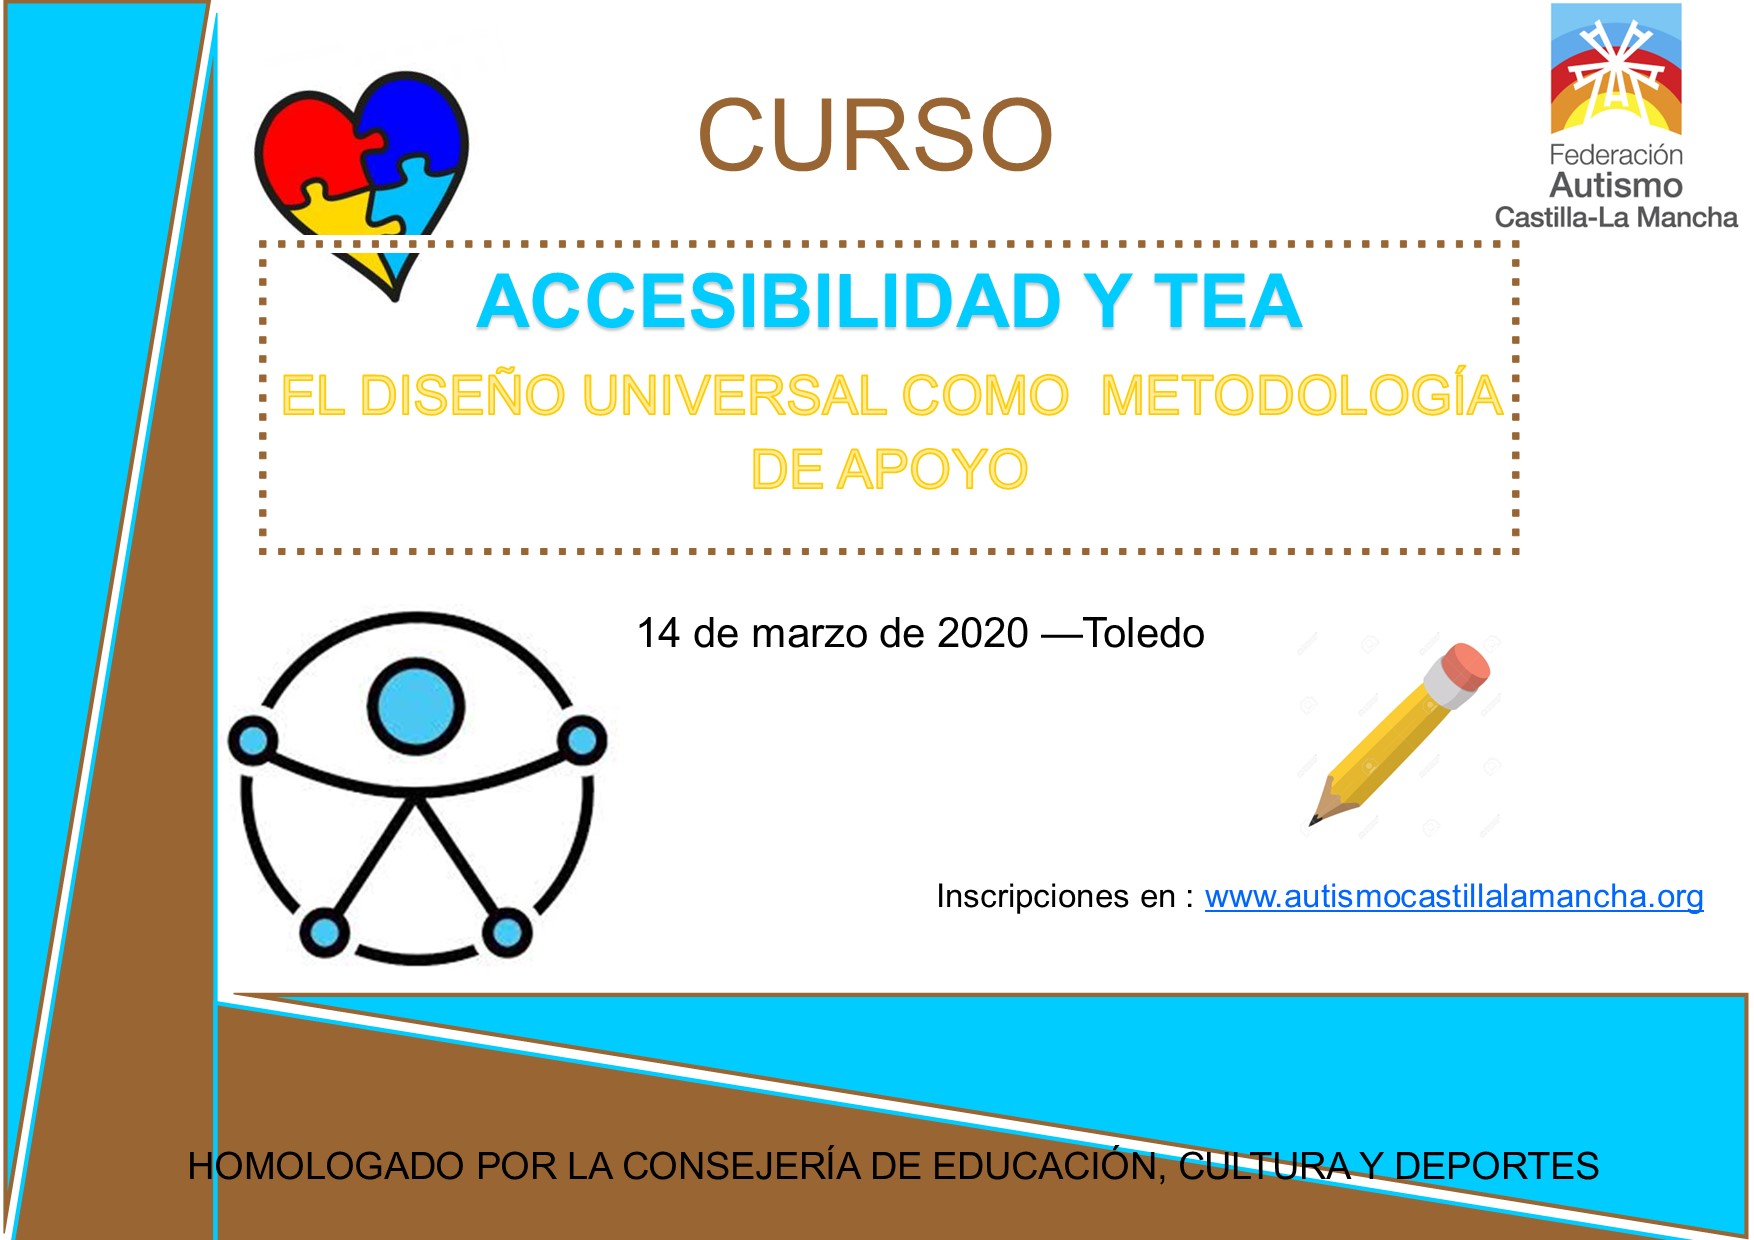 Curso “Accesibilidad y TEA: Diseño universal como metodología de apoyo” en Toledo el 14 de marzo.